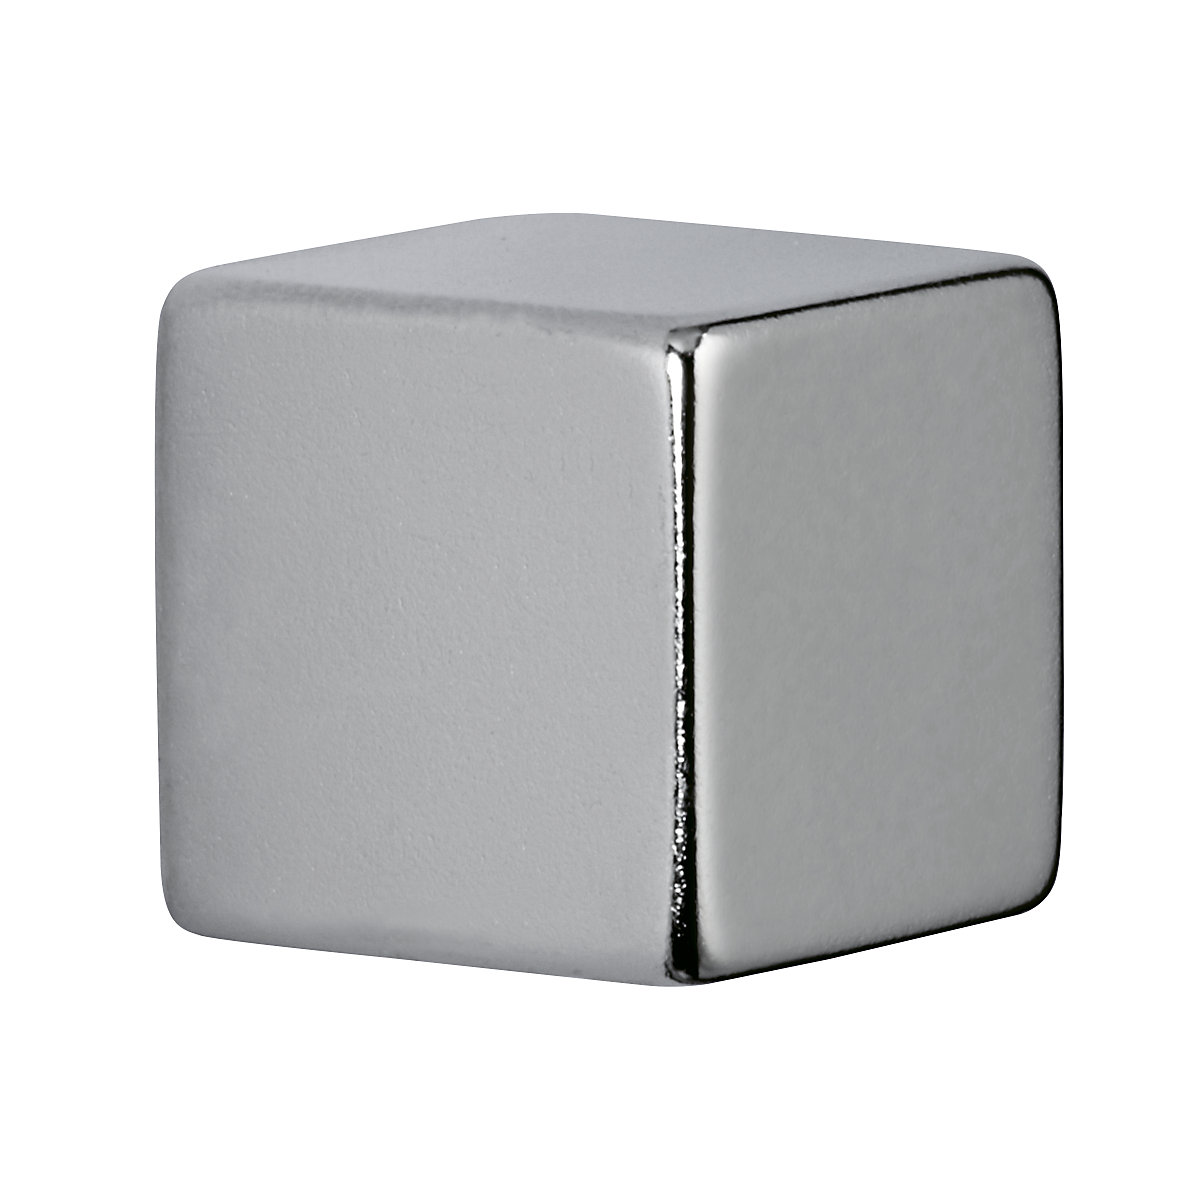 Neodymium cube magnet - MAUL